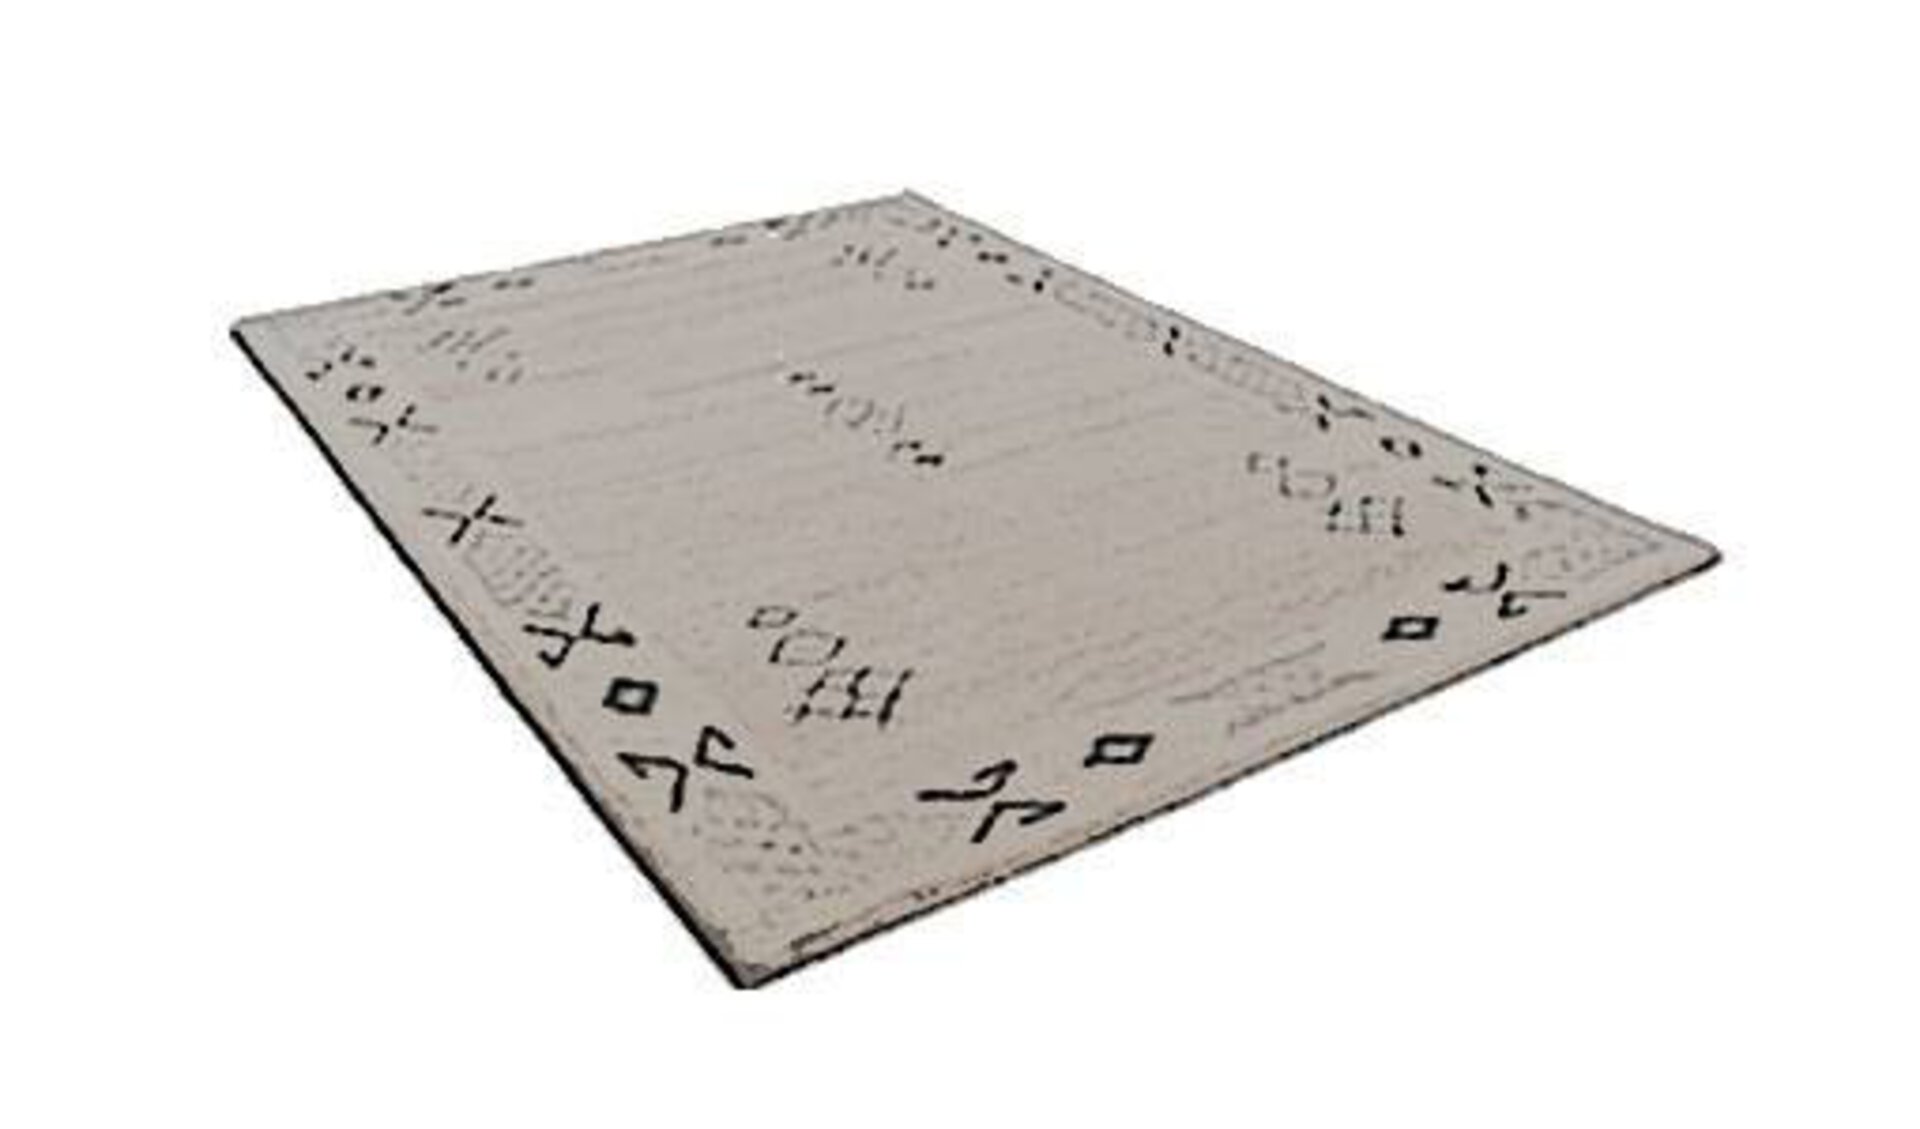 Stilisierter Berberteppich als Synonym für die Kategorie. Auf dem grauen Teppich sind leichte Muster zu erkennen, die typisch für die Berberteppiche sind.